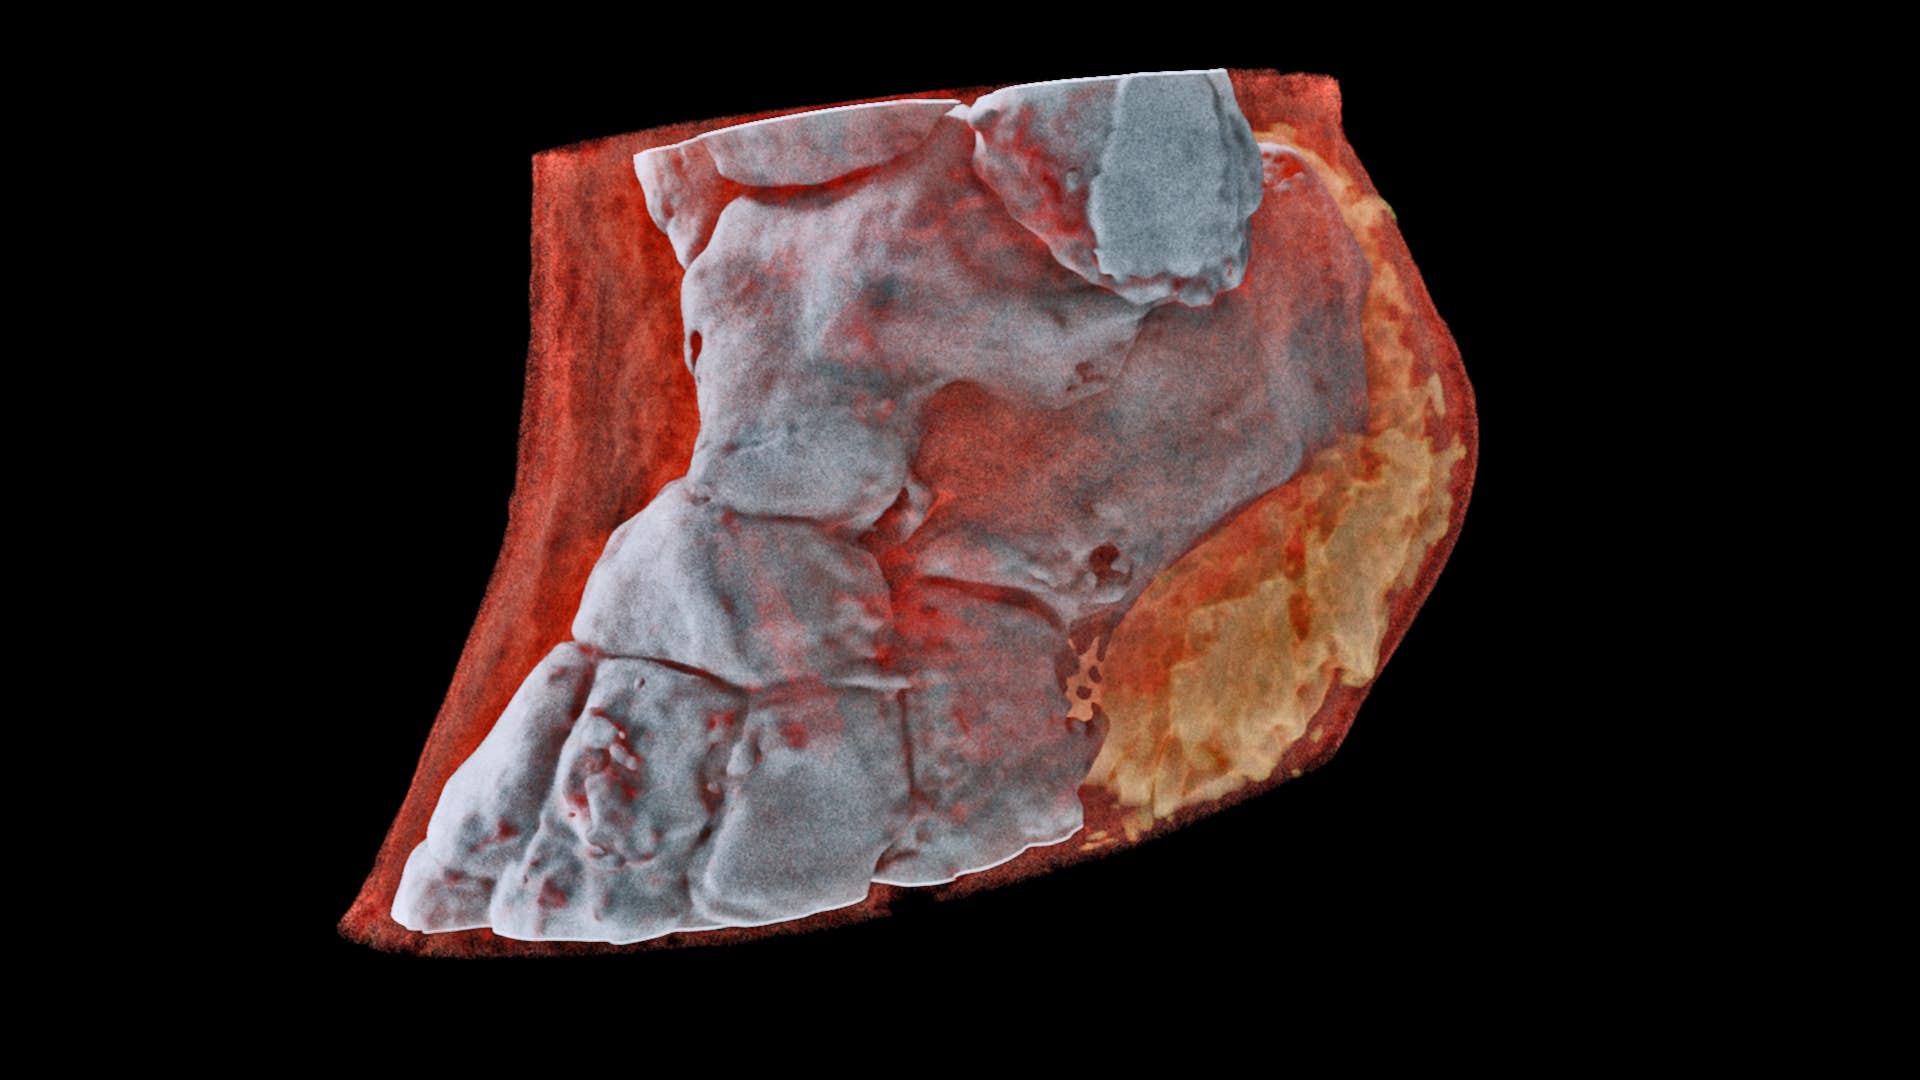 Barevný 3D rentgenový snímek kotníku. Zobrazuje kosti, měkké tkáně i tuky. Kredit: Mars Bioimaging.